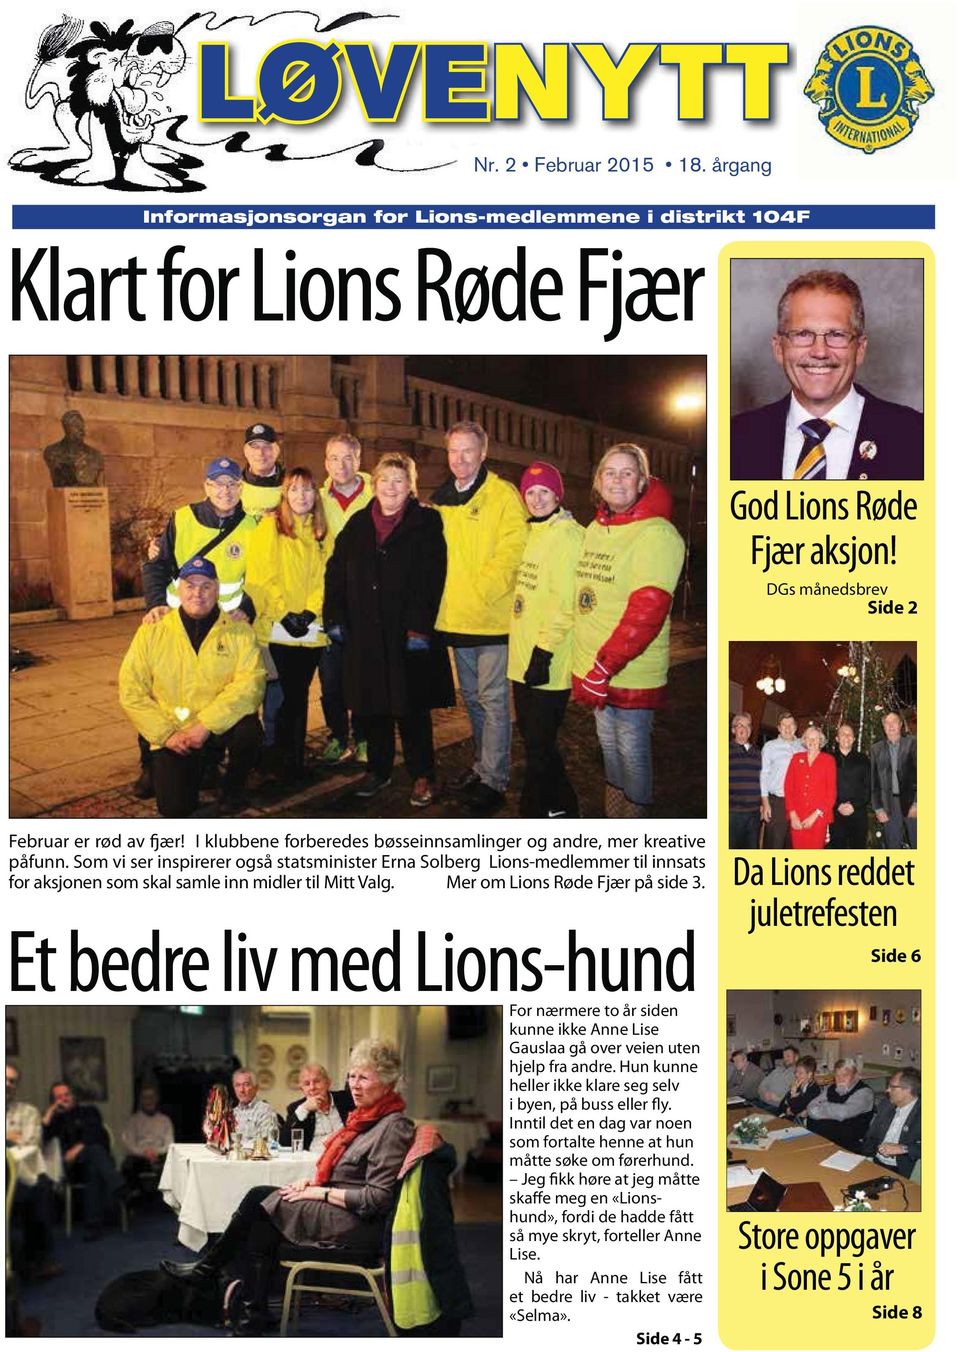 Som vi ser inspirerer også statsminister Erna Solberg Lions-medlemmer til innsats for aksjonen som skal samle inn midler til Mitt Valg. Mer om Lions Røde Fjær på side 3.